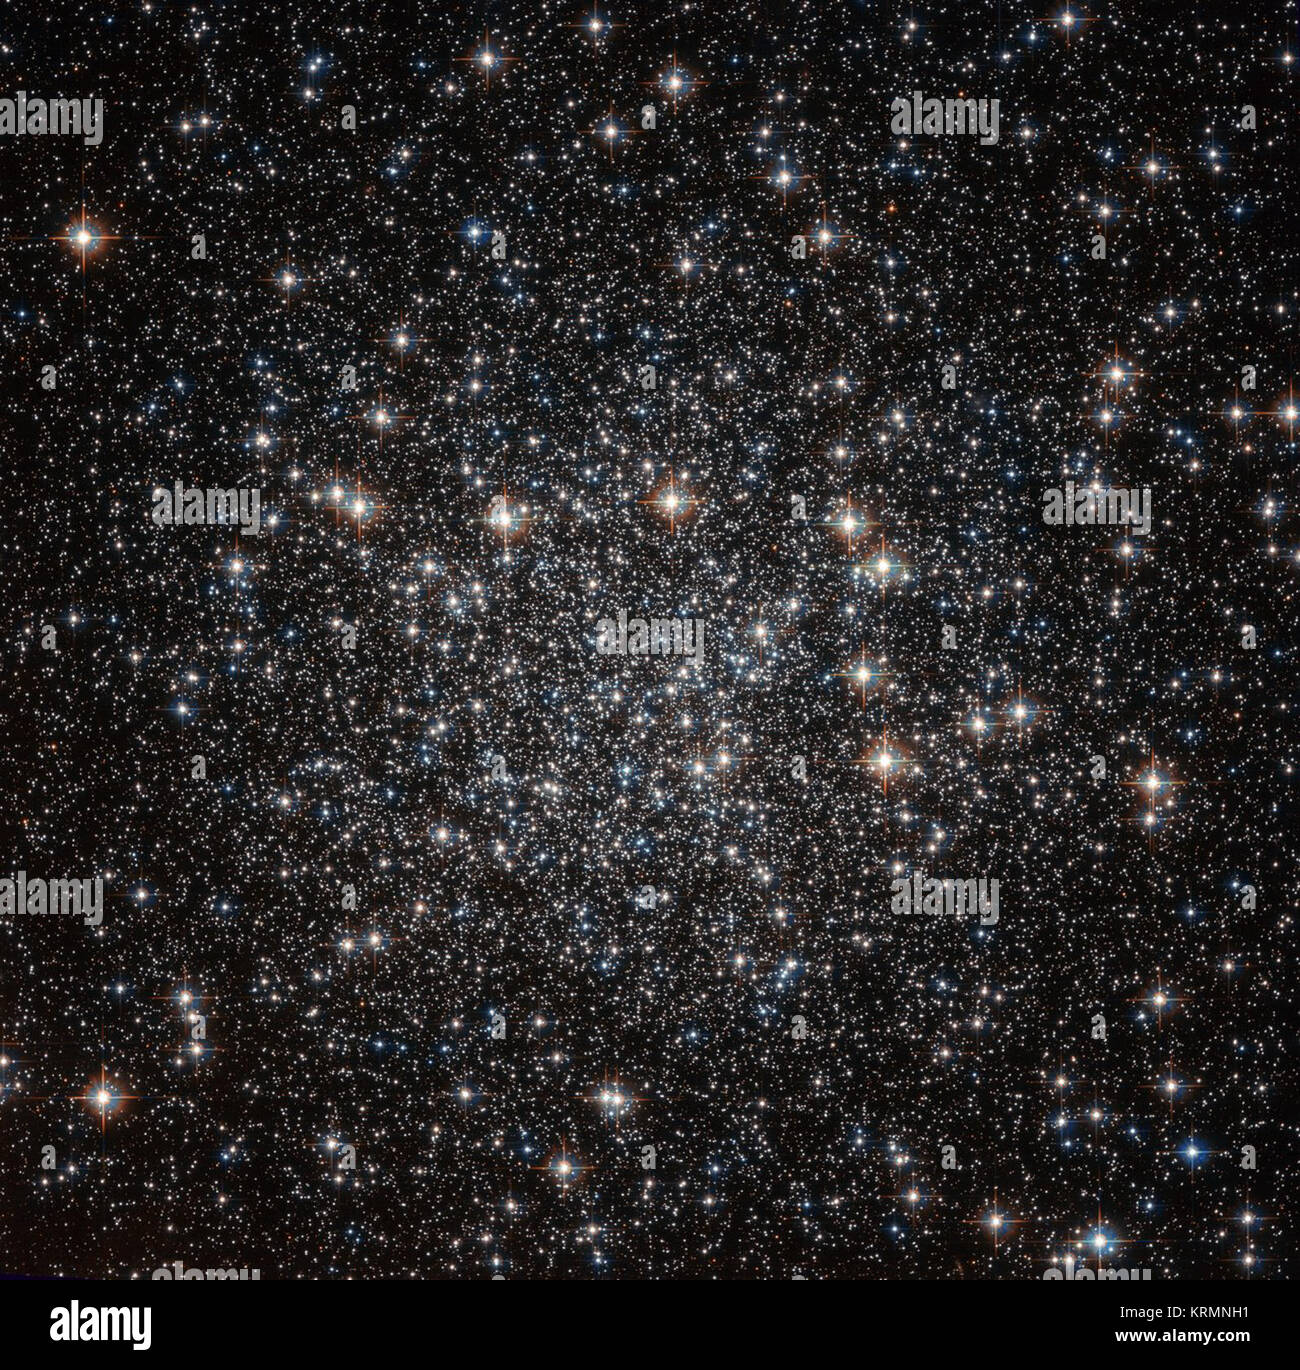 Situé à environ 22 000 années-lumière dans la constellation de la mouche (The Fly), cette collection d'étoiles serrées - connu comme un amas globulaire - va par le nom de NGC 4833. Cette NASA/ESA Hubble Space Telescope image montre le groupe stellaire éblouissante dans toute sa gloire. NGC 4833 est l'un des 150 amas globulaires connus pour résider dans la Voie lactée. Ces objets sont pensés pour contenir certaines des plus vieilles étoiles de notre galaxie. L'étude de ces anciennes grappes cosmique peut aider les astronomes à découvrir comment se sont formées et ont évolué d'une galaxie, et donner une idée de l'âge de la galaxie. C globulaire Banque D'Images